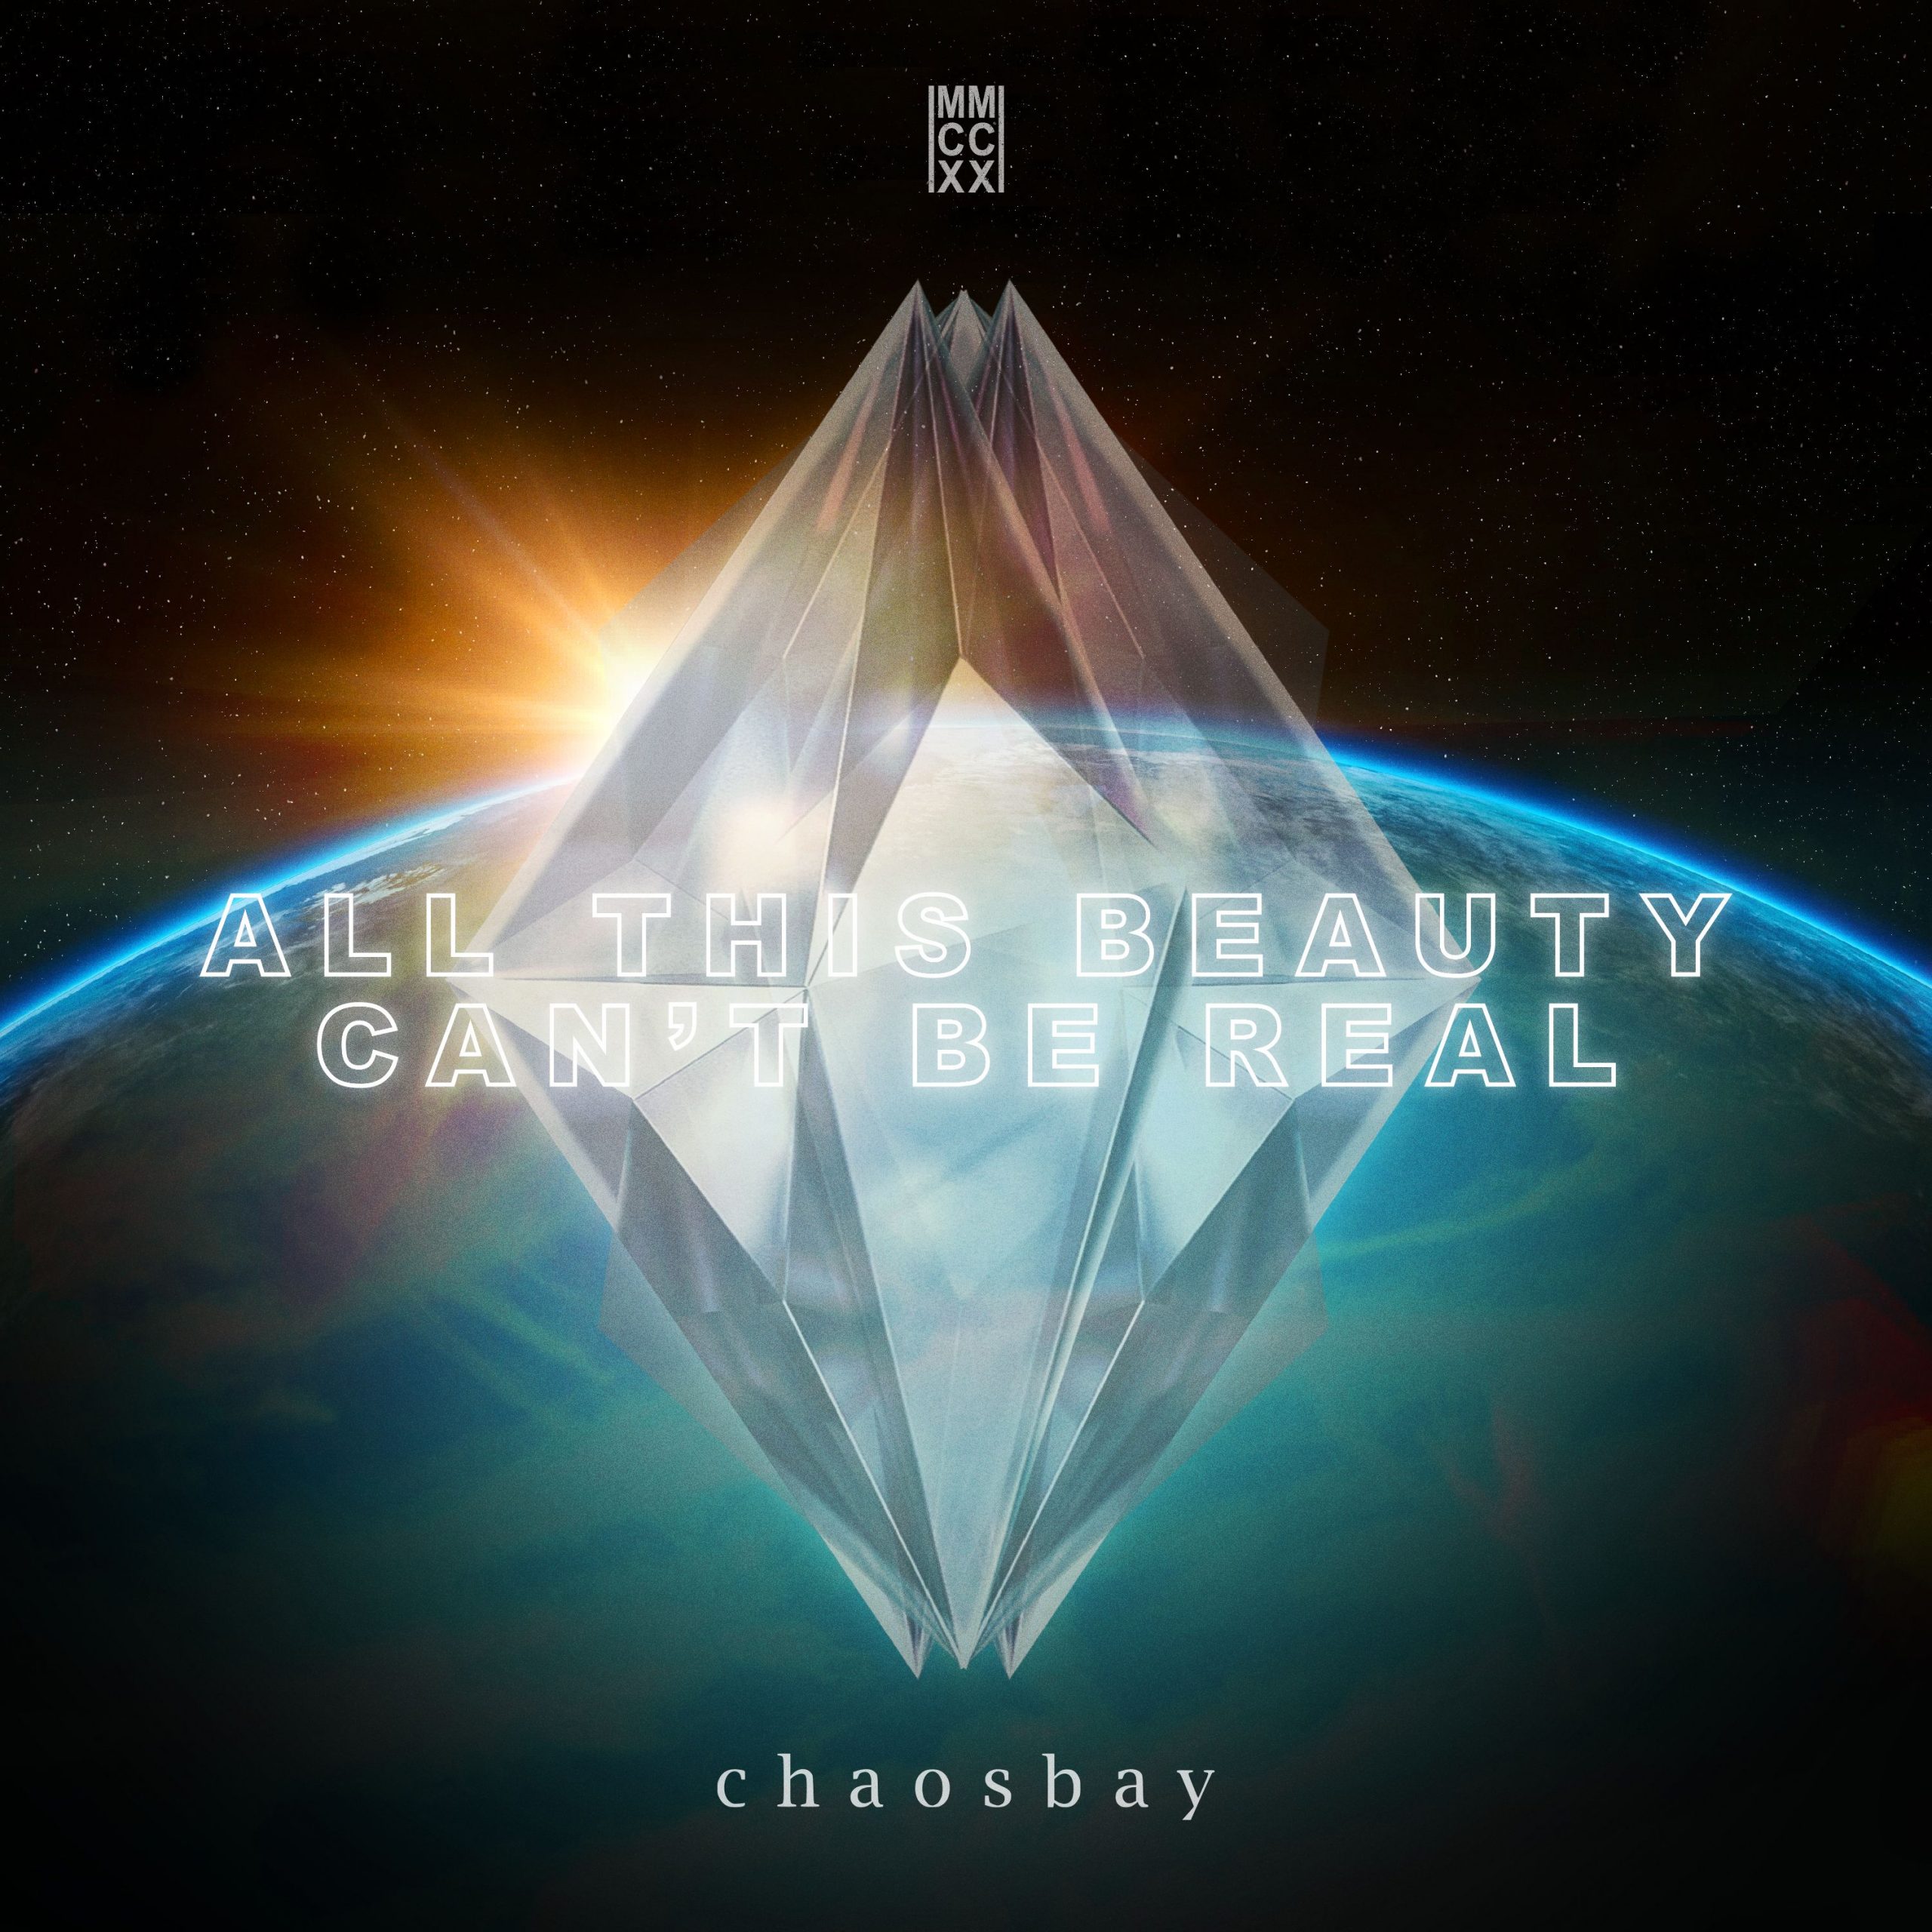 Chaosbay cover art (Design Marcel Richard)